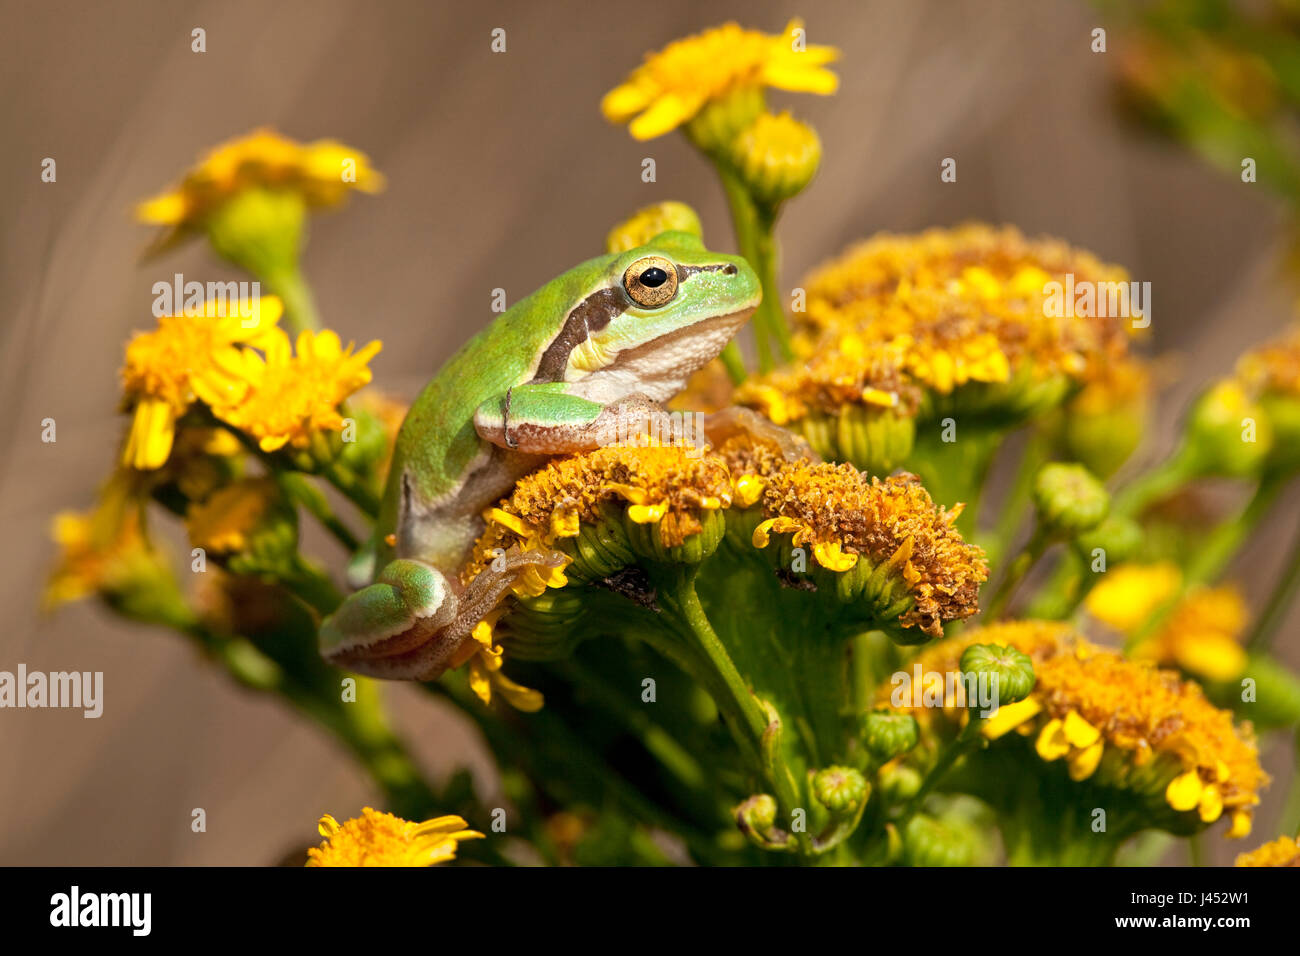 Foto de una rana de árbol común de flores amarillas contra un fondo marrón Foto de stock